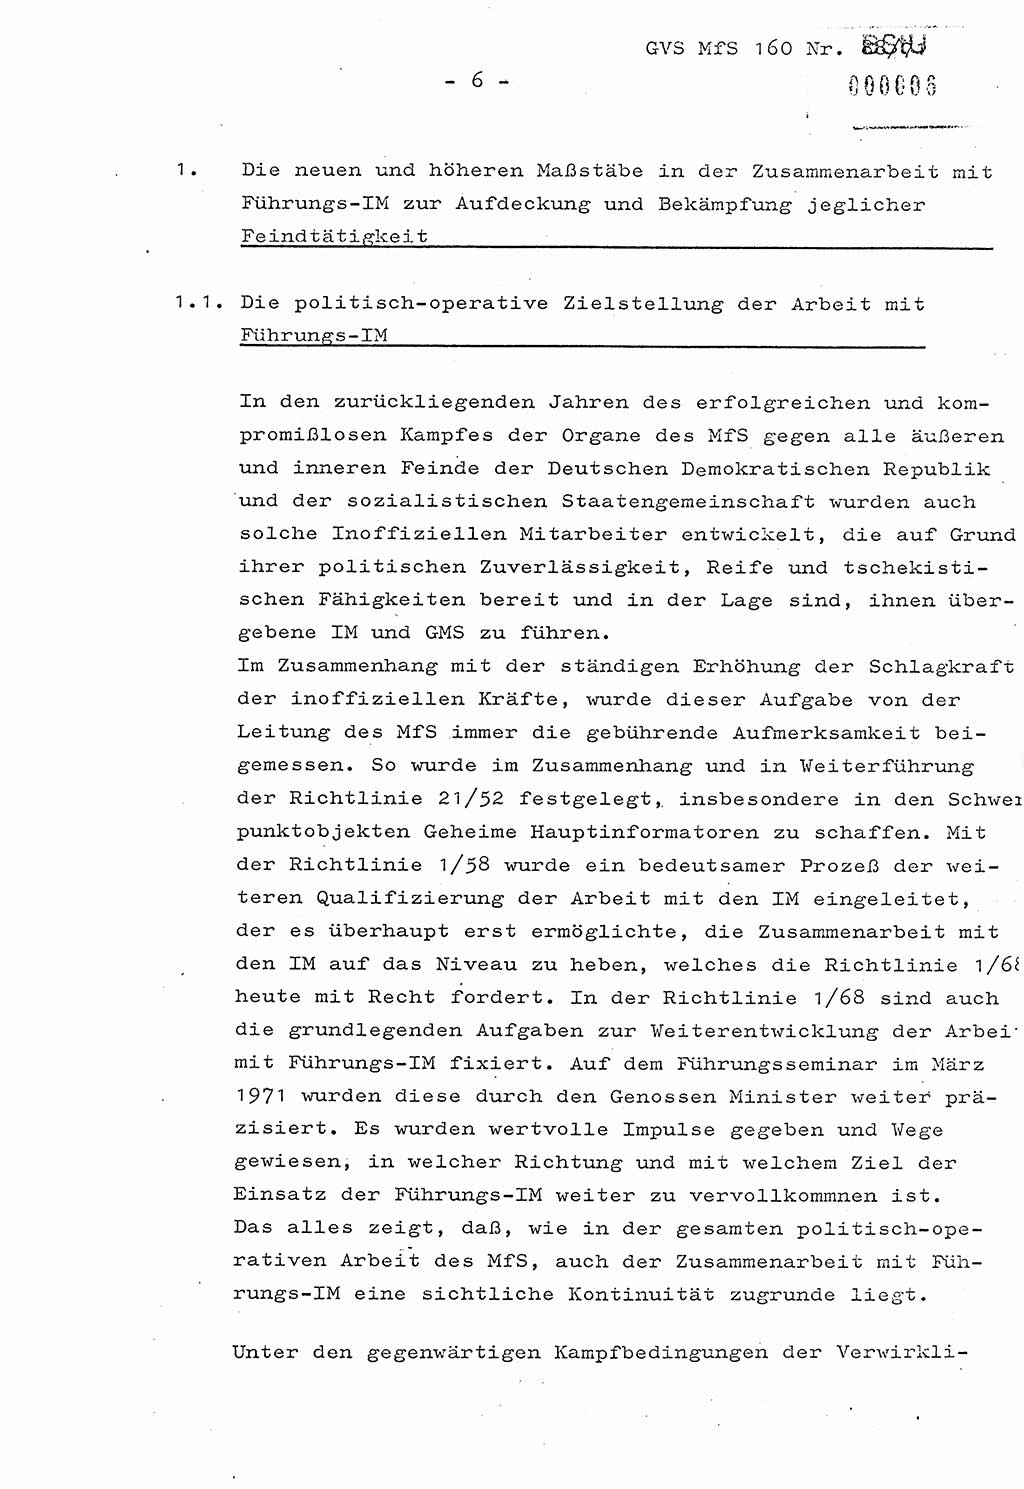 Dissertation Oberstleutnant Josef Schwarz (BV Schwerin), Major Fritz Amm (JHS), Hauptmann Peter Gräßler (JHS), Ministerium für Staatssicherheit (MfS) [Deutsche Demokratische Republik (DDR)], Juristische Hochschule (JHS), Geheime Verschlußsache (GVS) 160-88/71, Potsdam 1972, Seite 6 (Diss. MfS DDR JHS GVS 160-88/71 1972, S. 6)